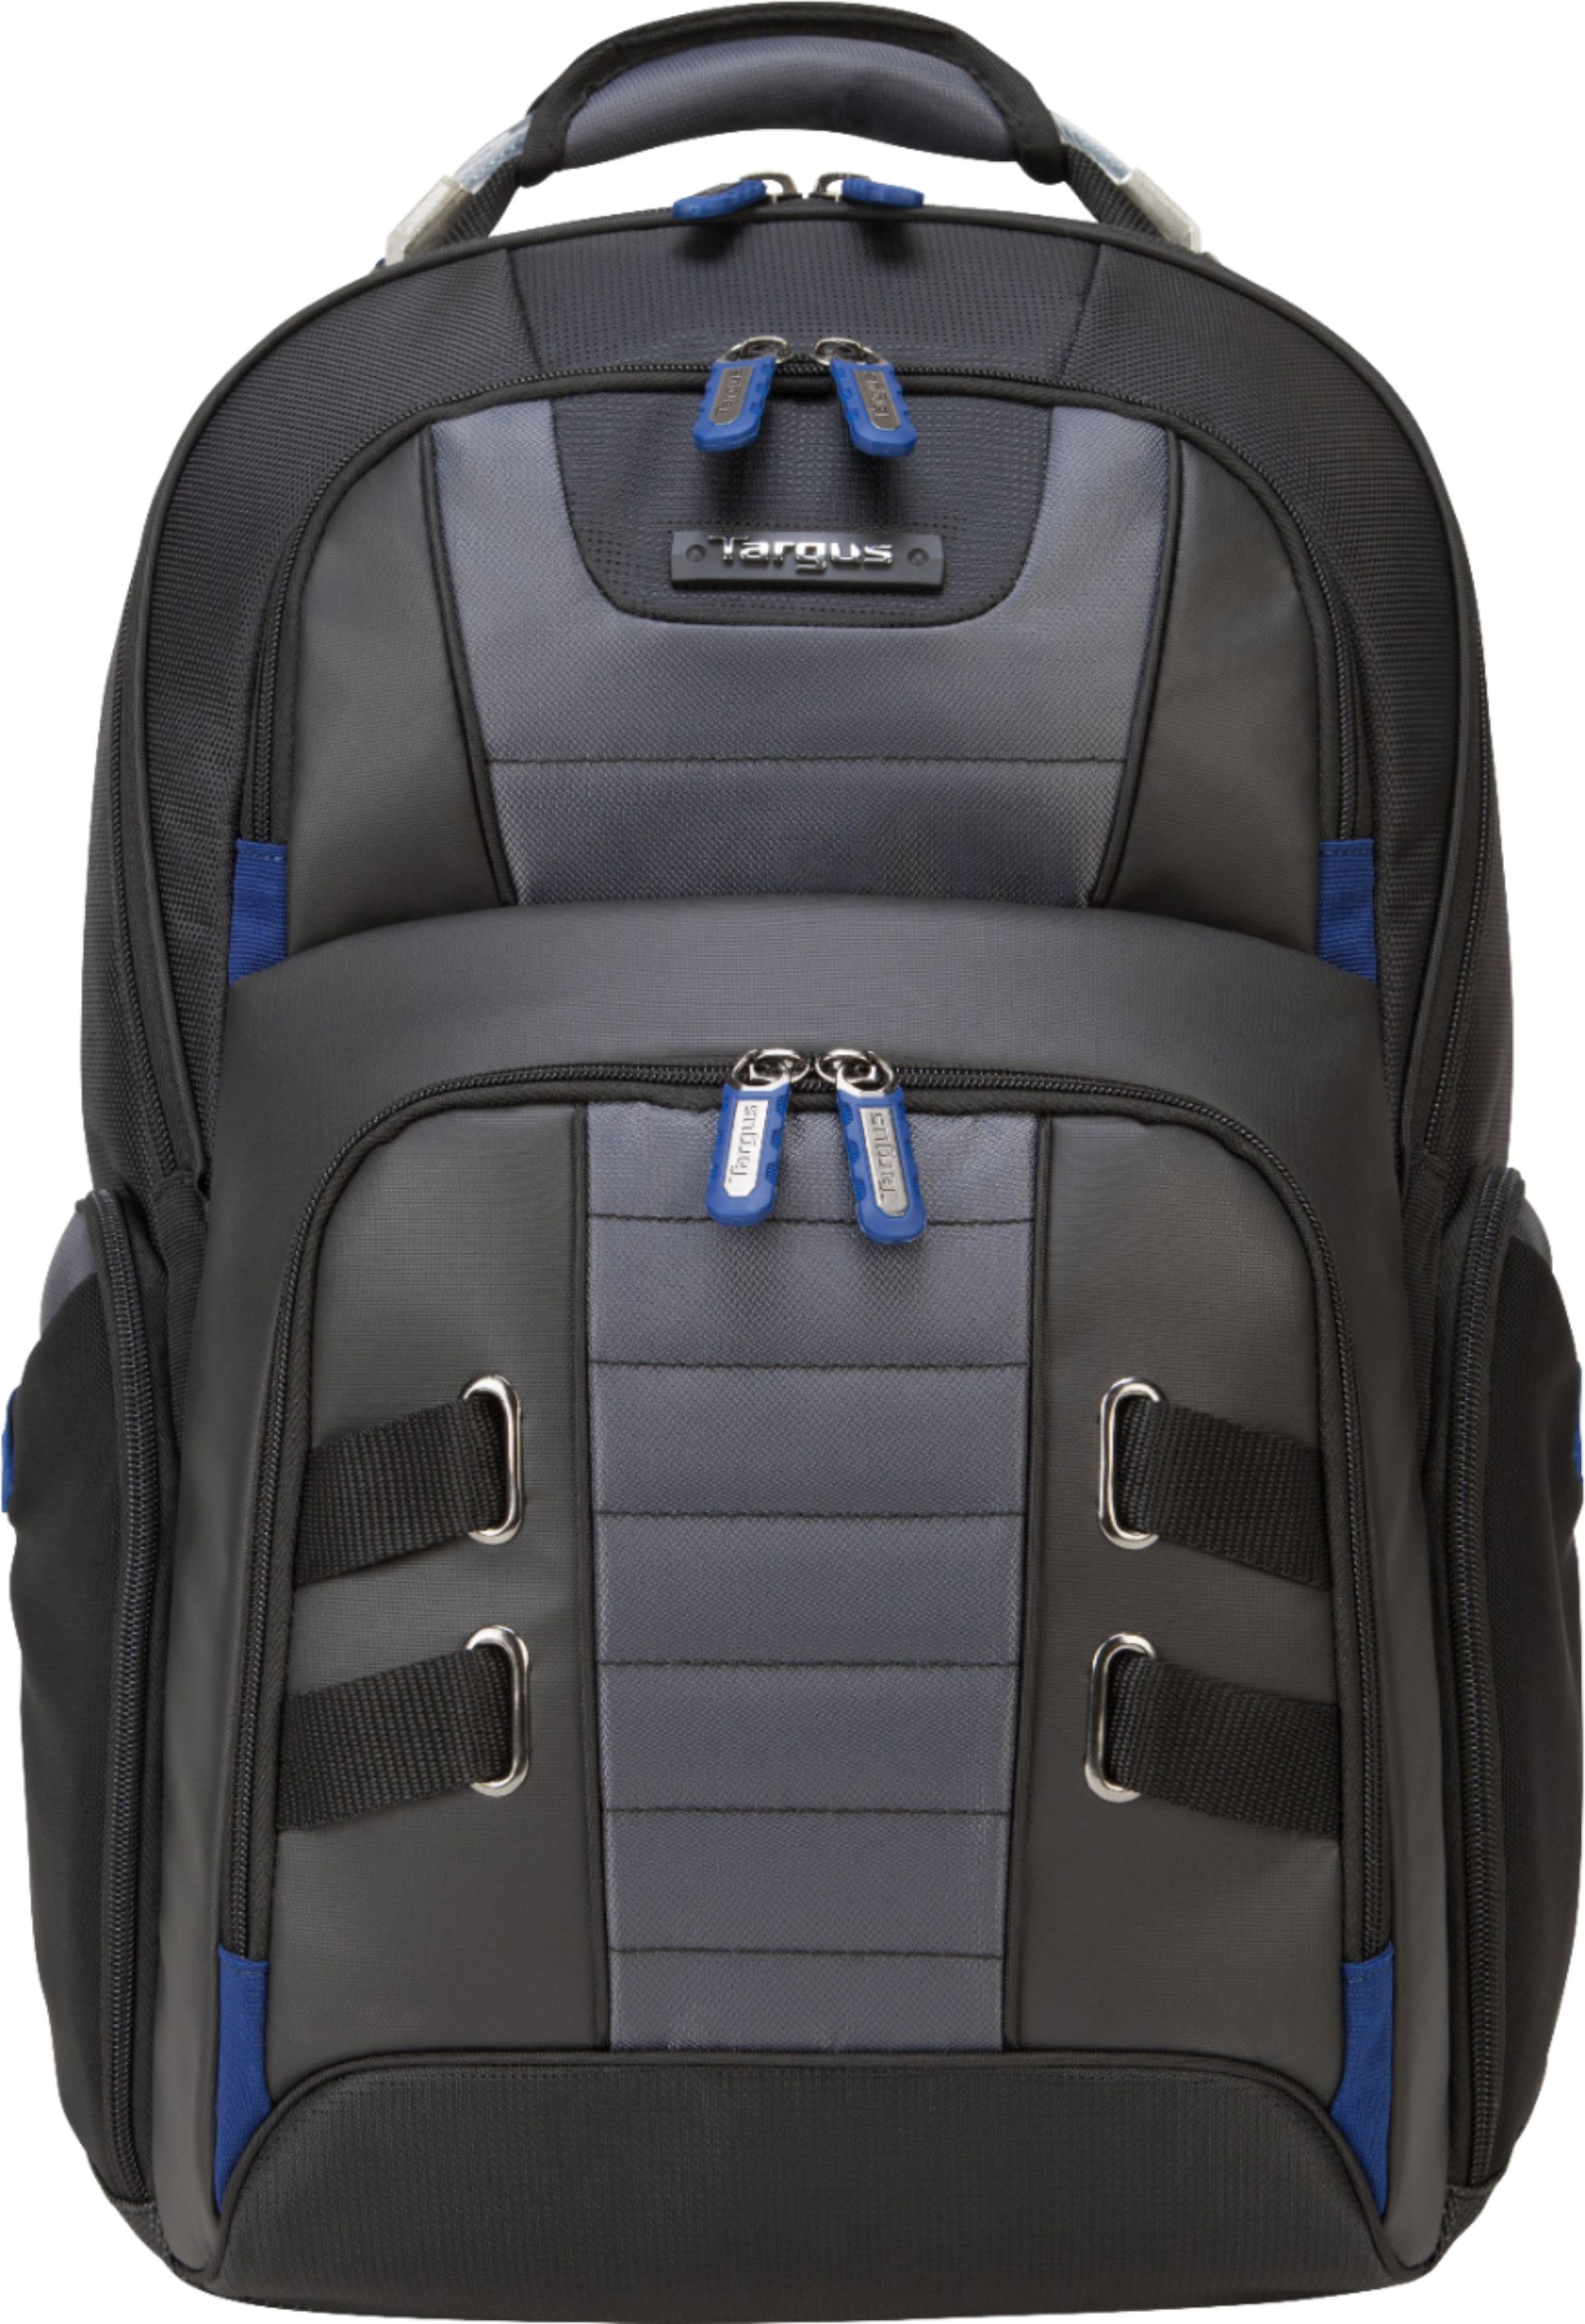 Targus - DrifterTrek Laptop Backpack - Gray/Black